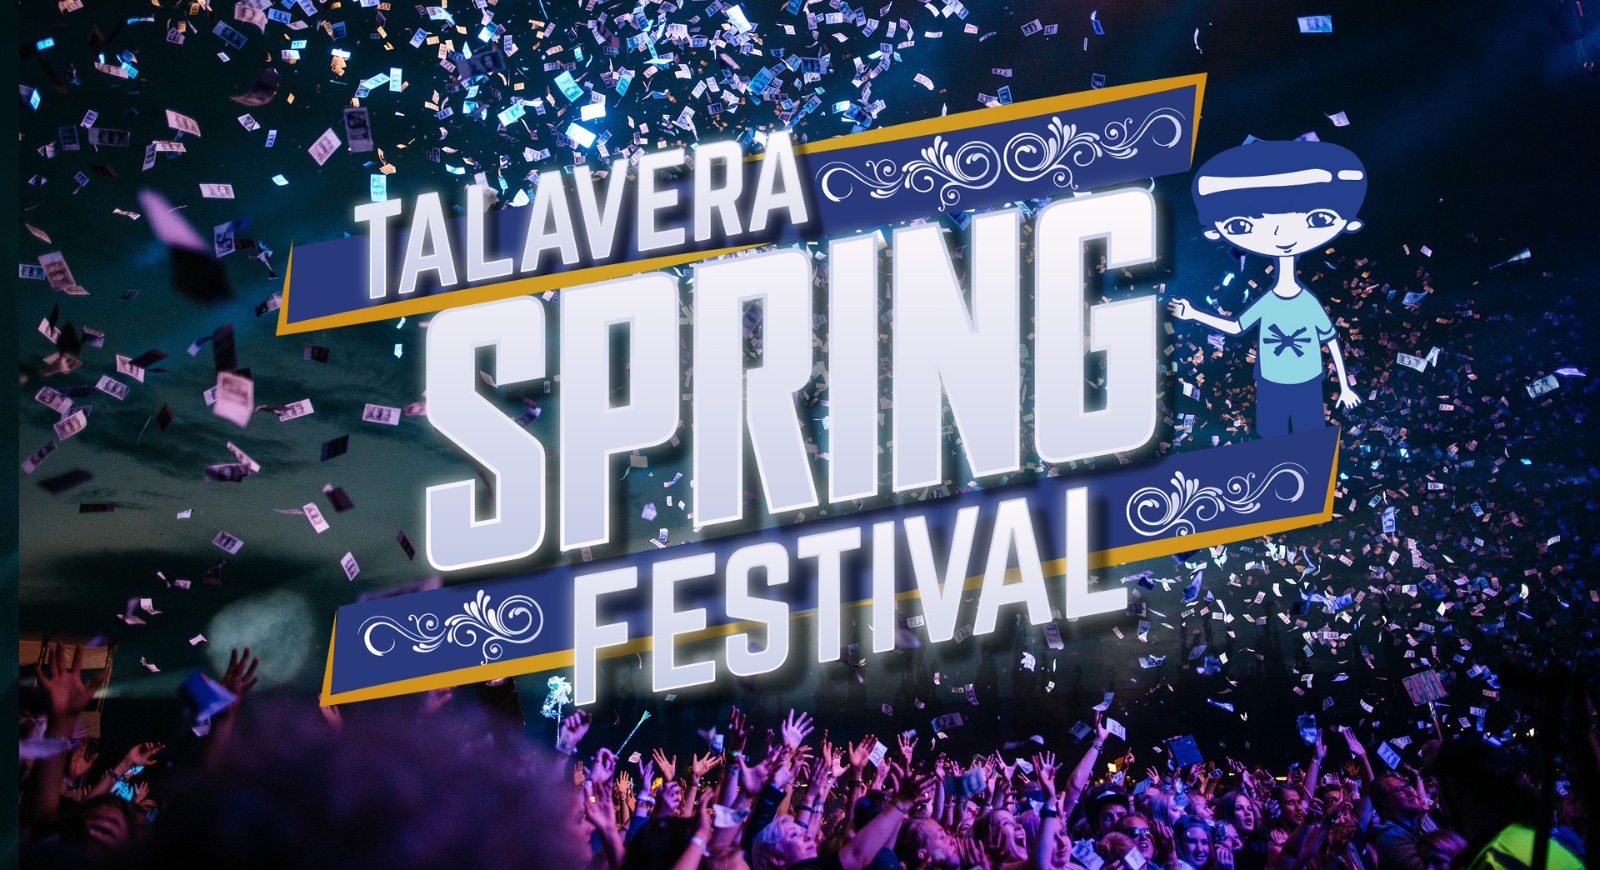 Talavera Sping Festival